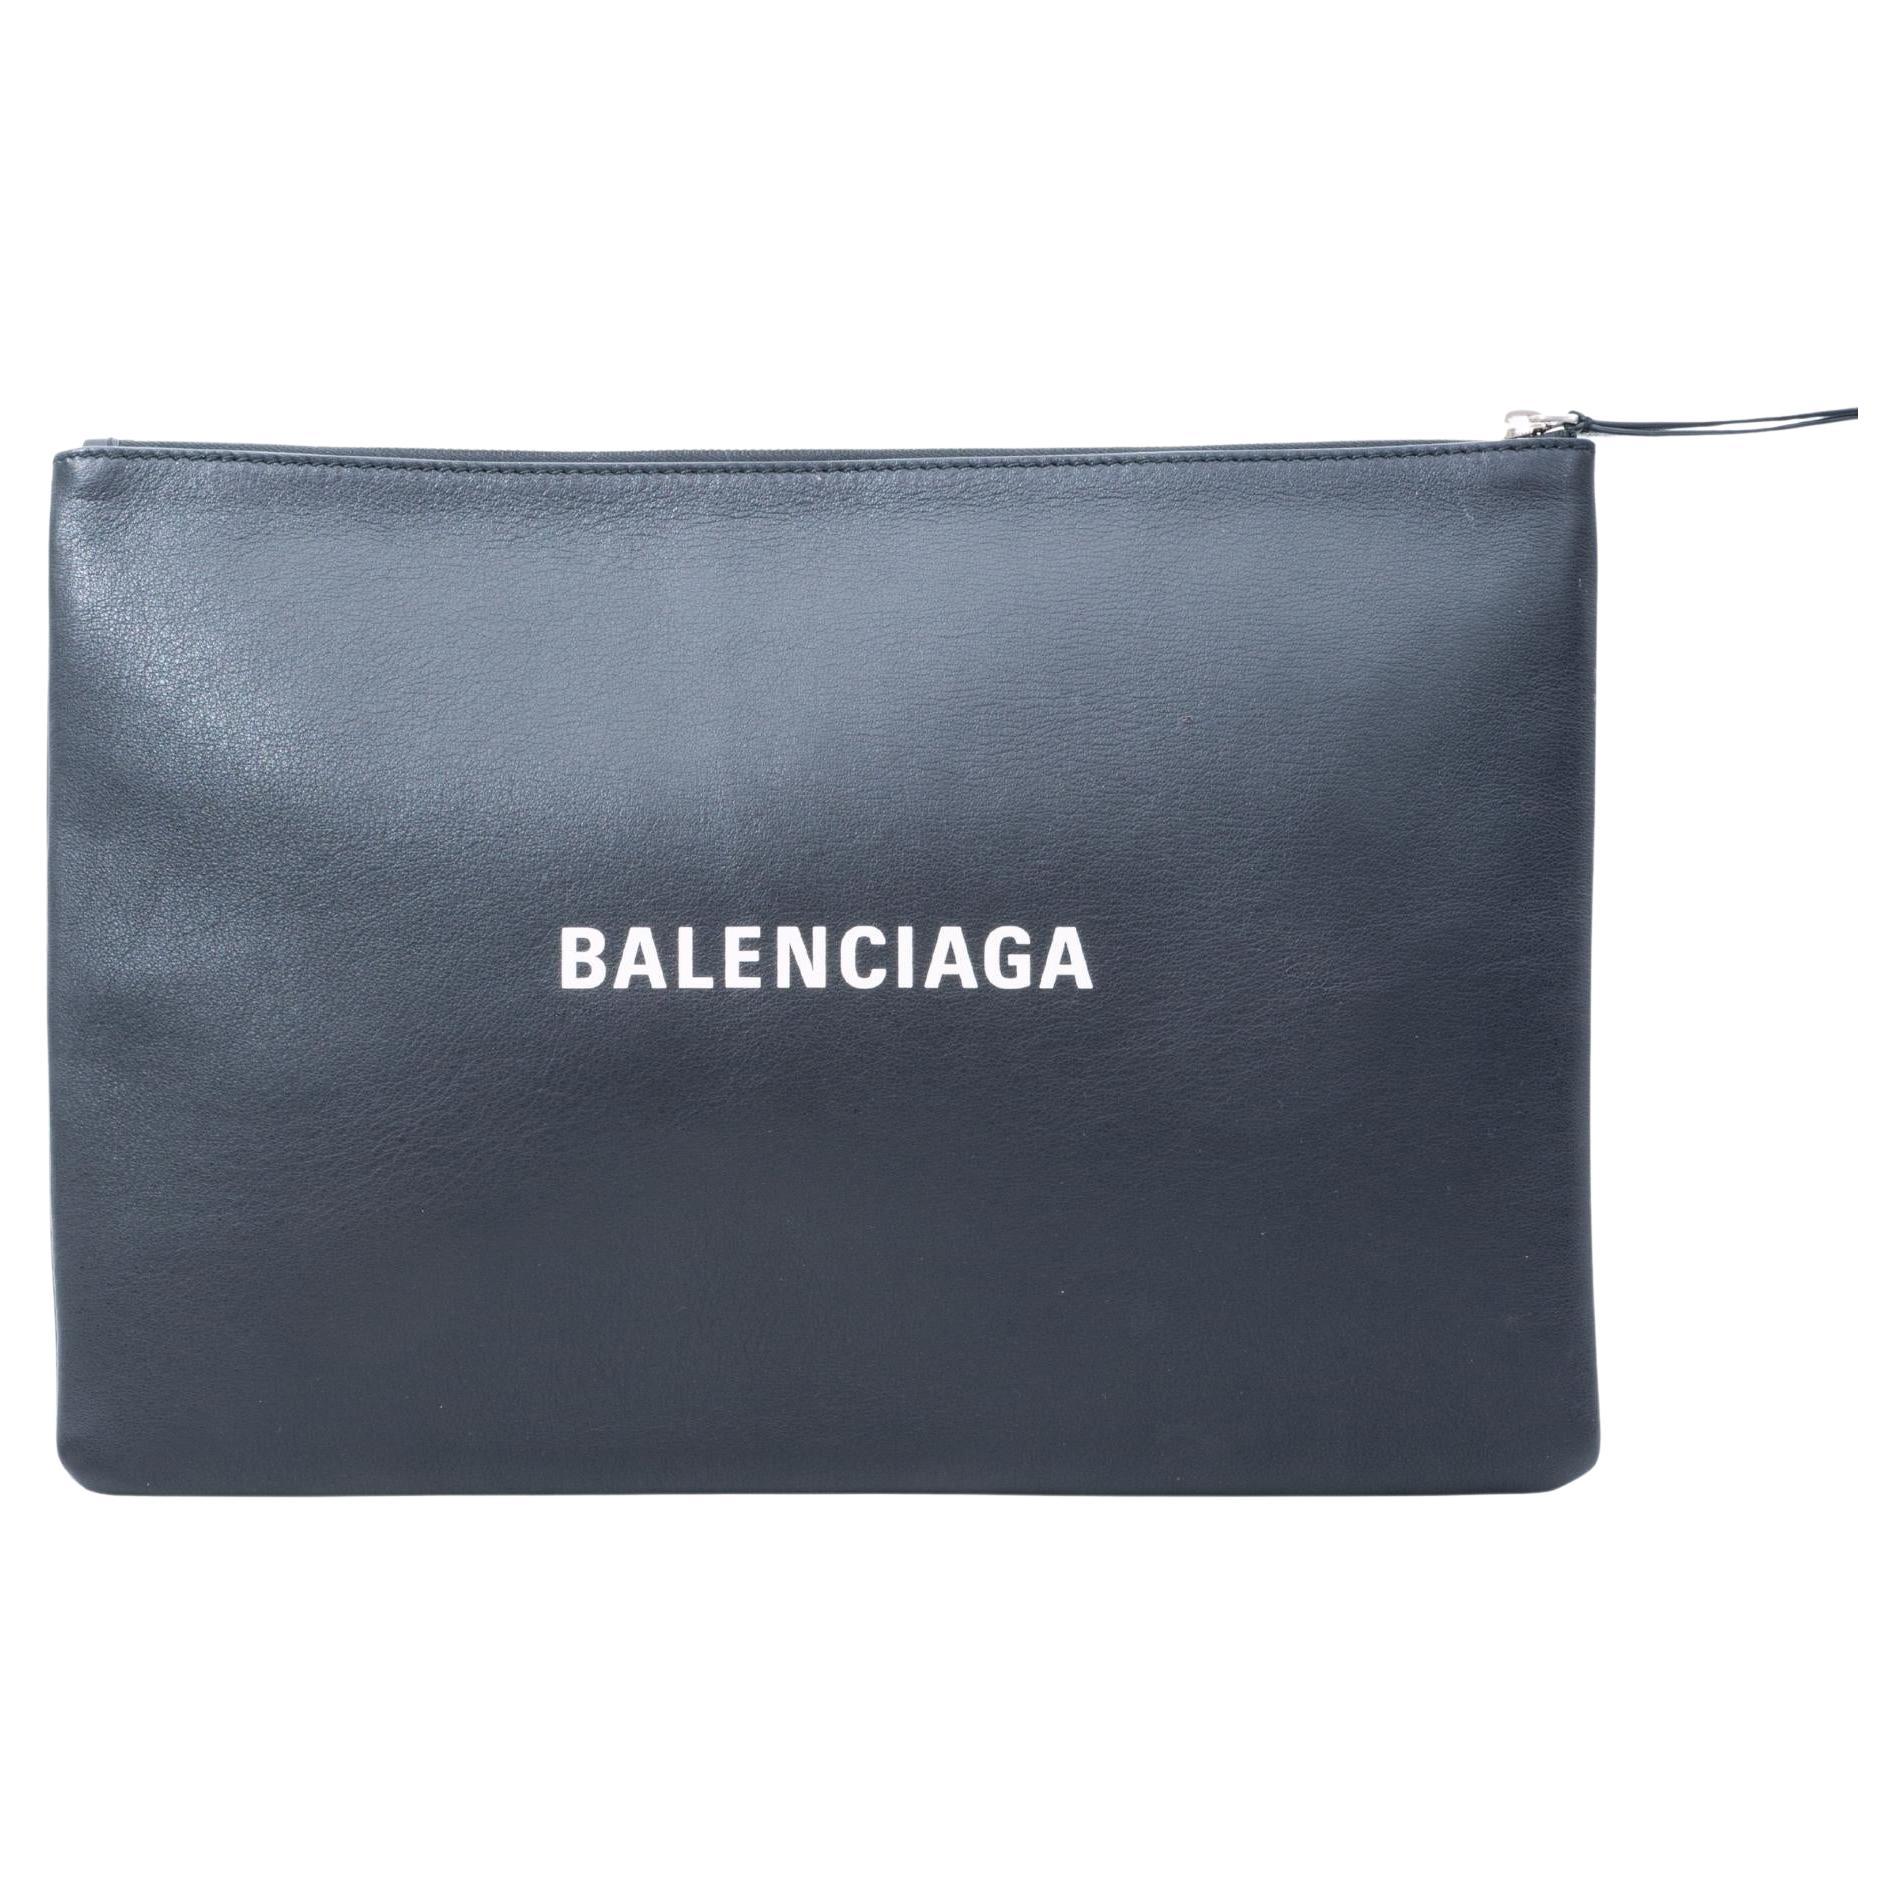 Balenciaga Leather Logo Documents Clutch (485112)